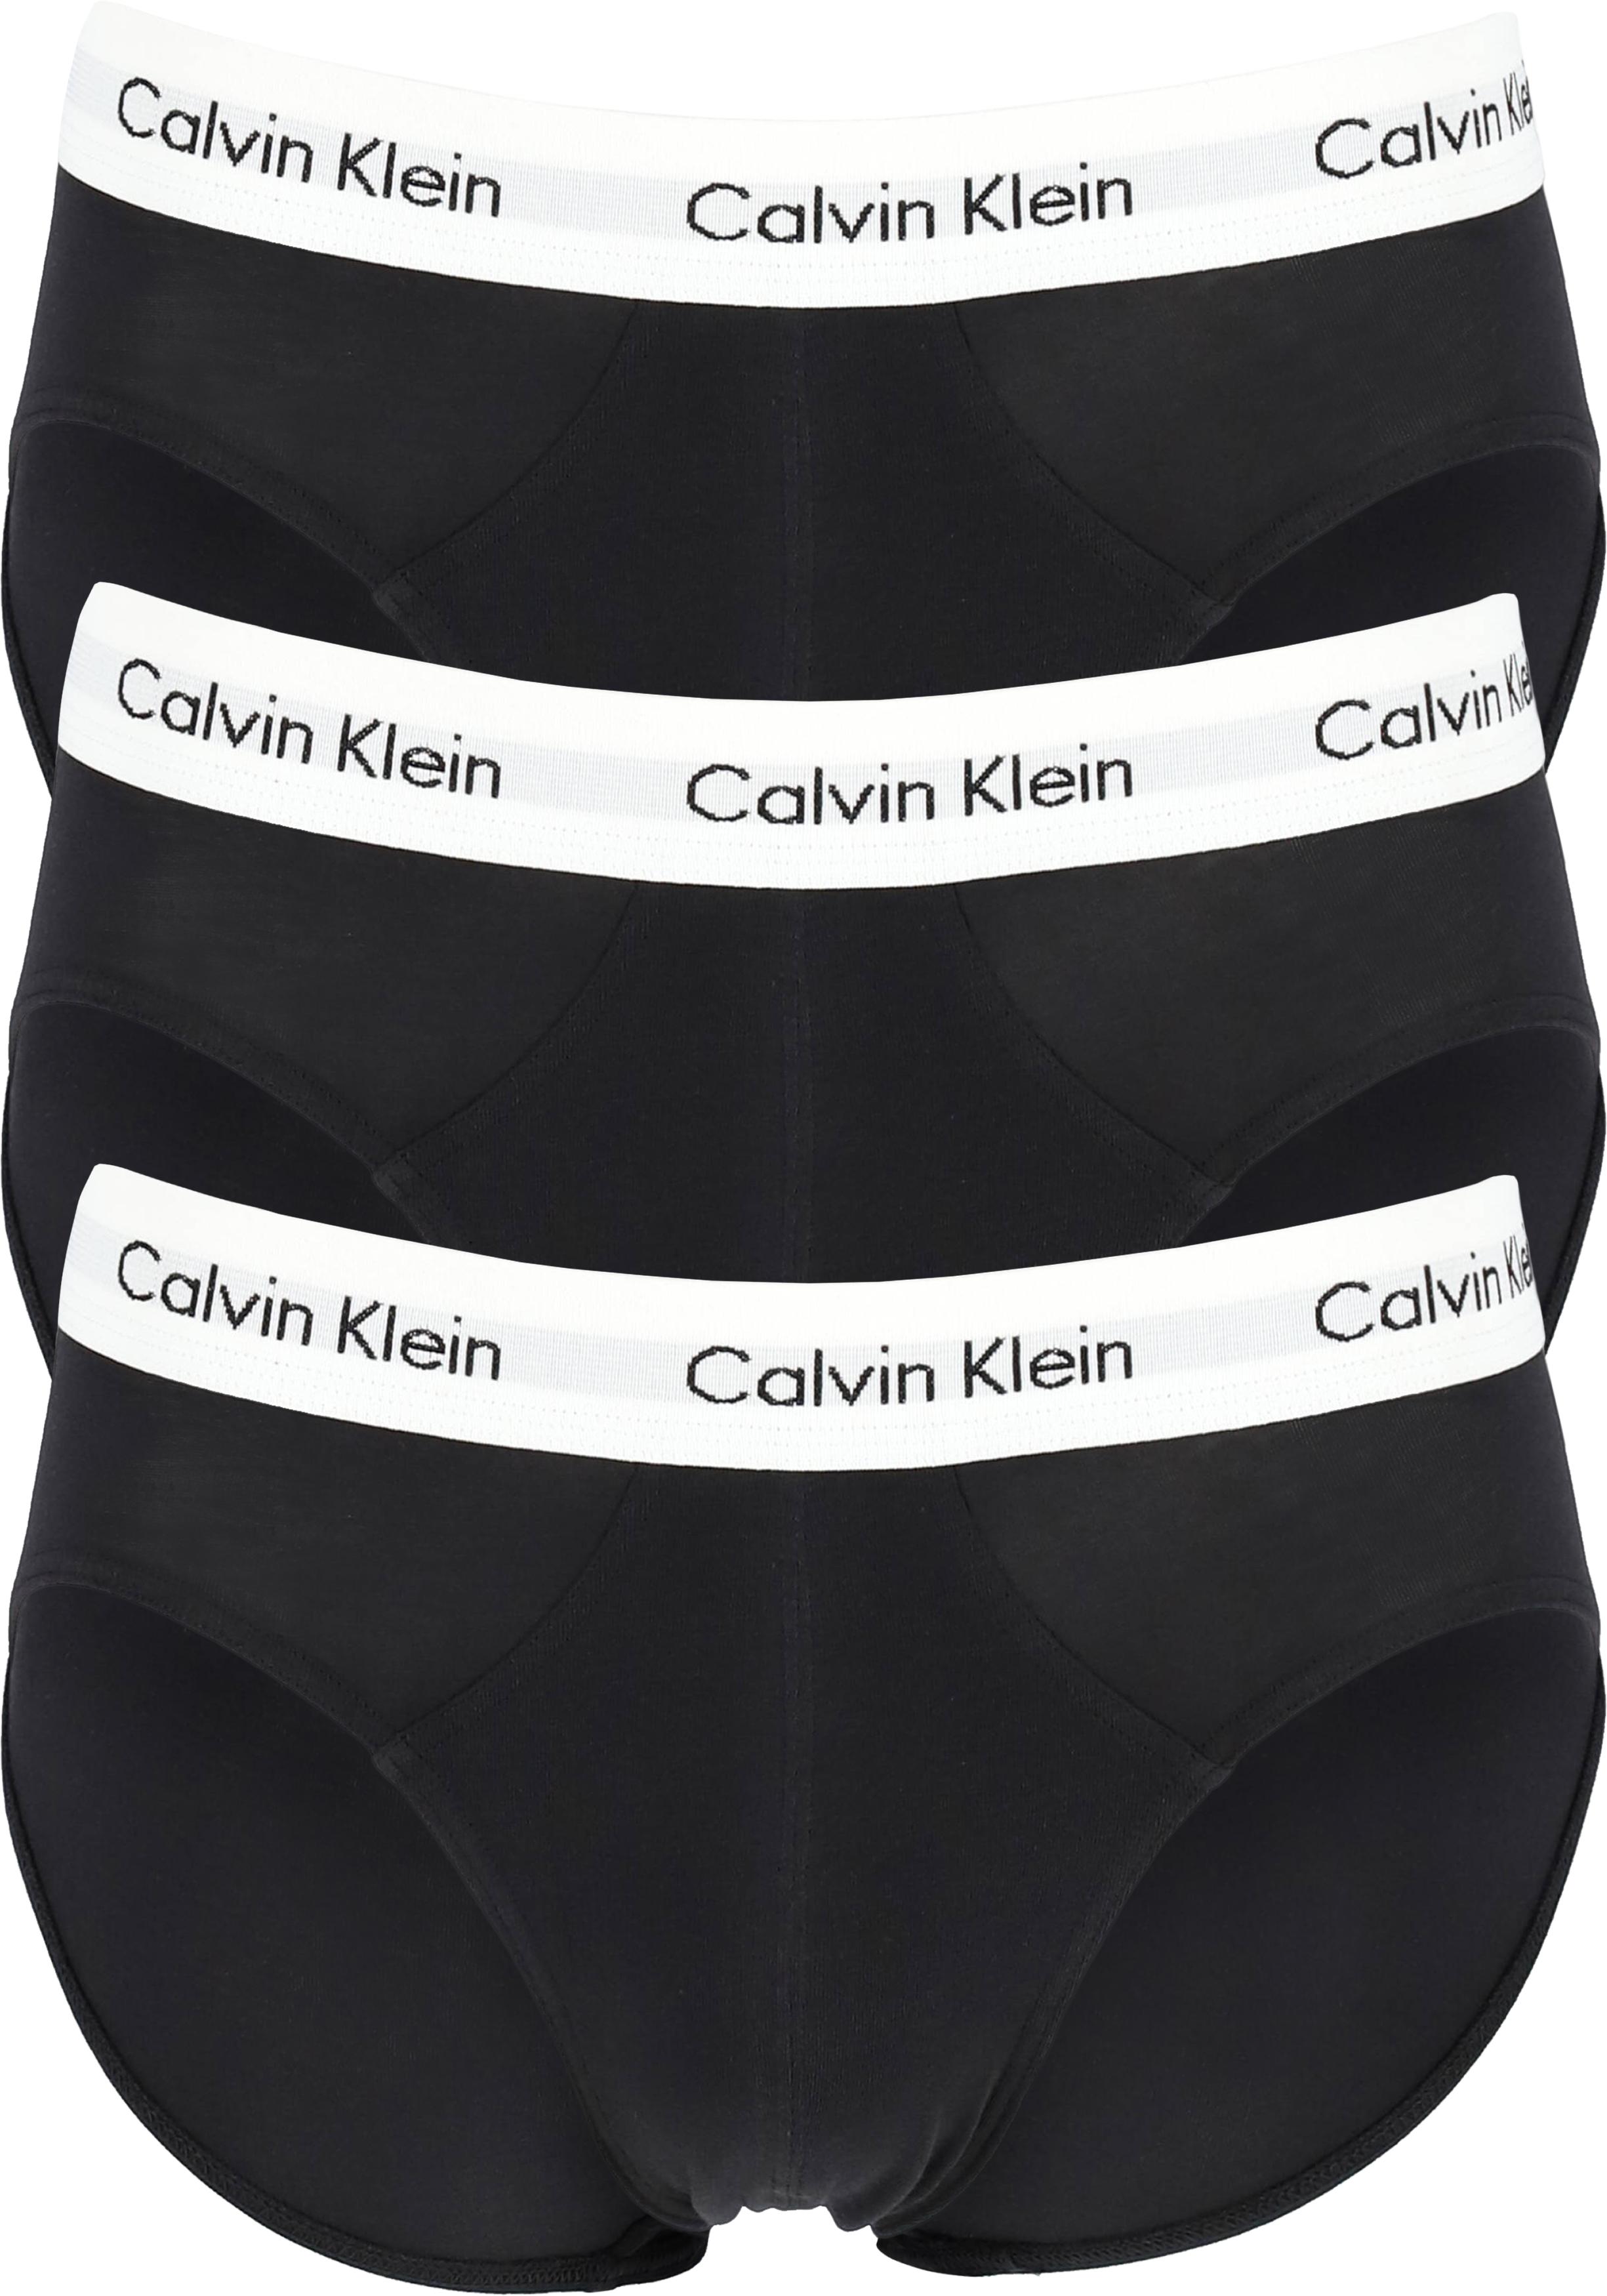 Hubert Hudson ingesteld hangen Calvin Klein hipster brief (3-pack), heren slips, zwart met witte band -  Shop de nieuwste voorjaarsmode